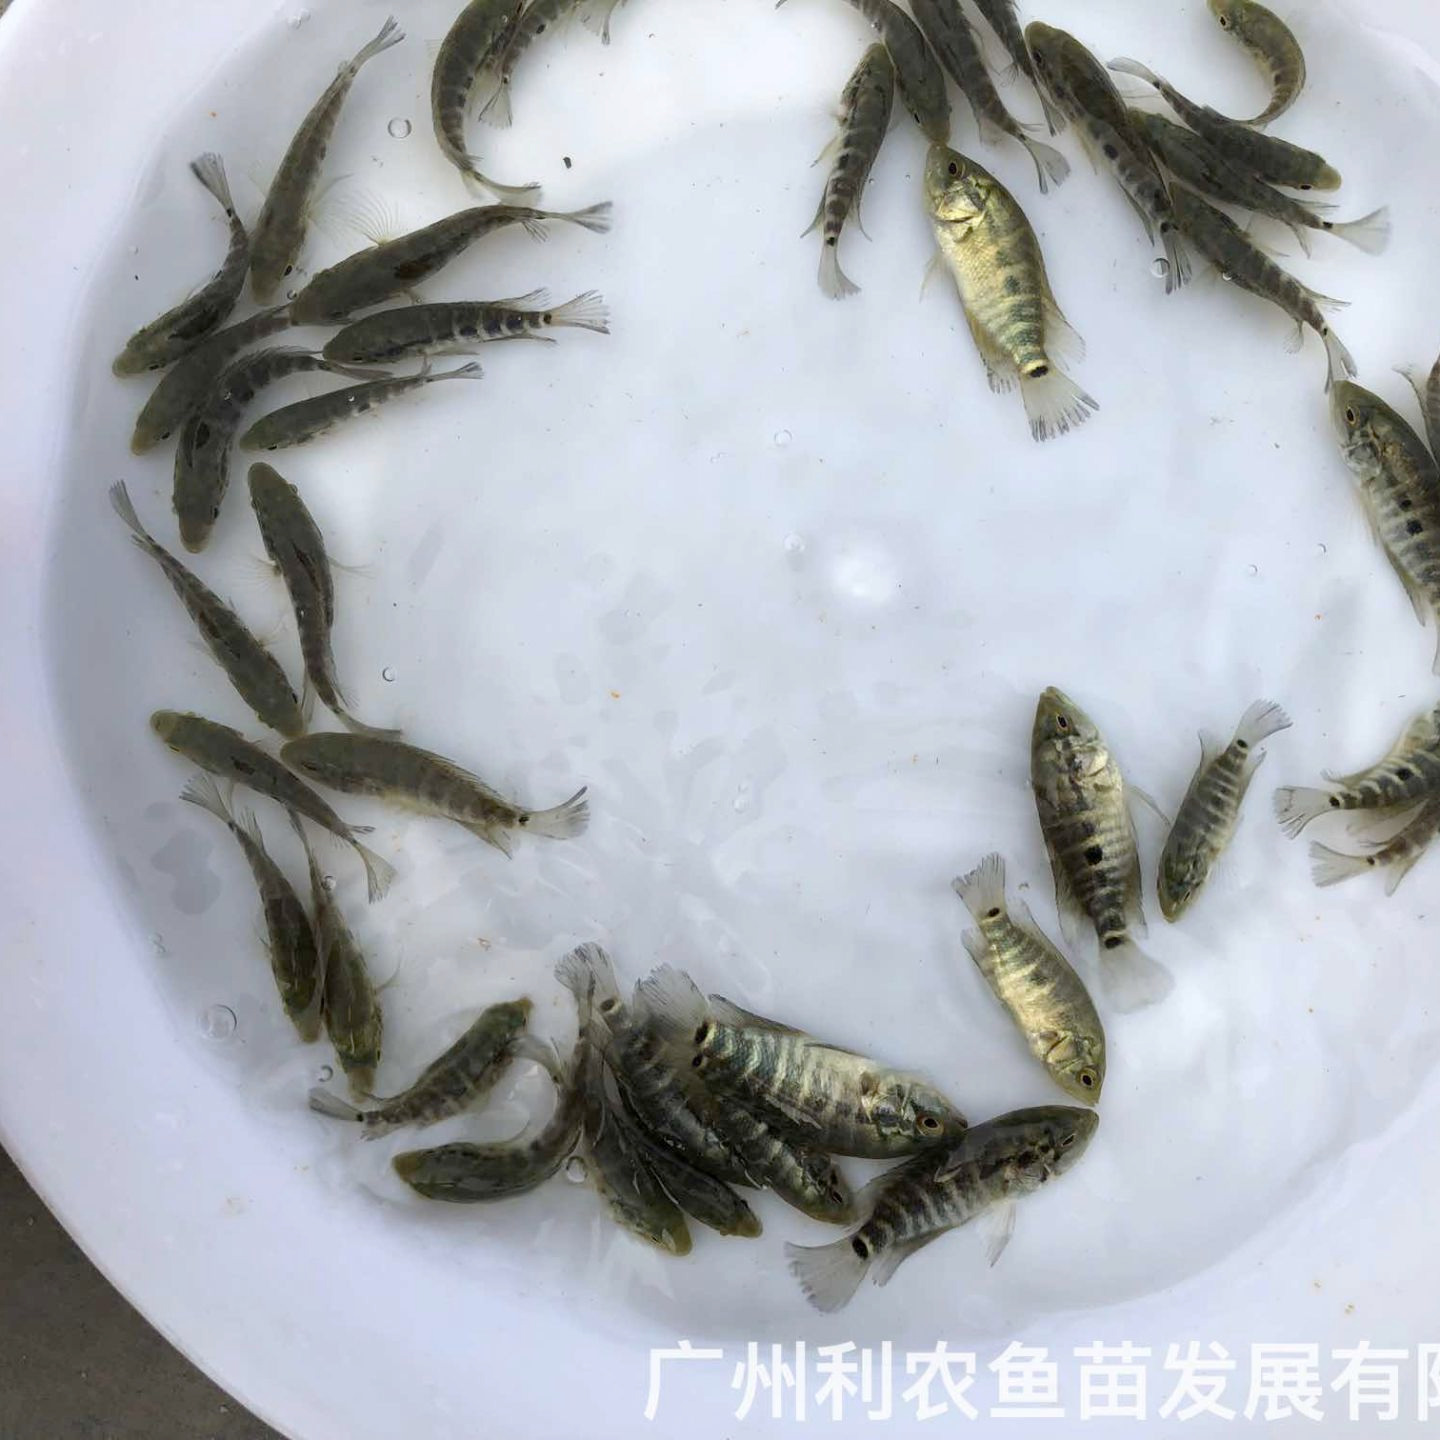 广东惠州淡水花斑鱼苗出售批发广东阳江石斑鱼苗批发价格养殖基地